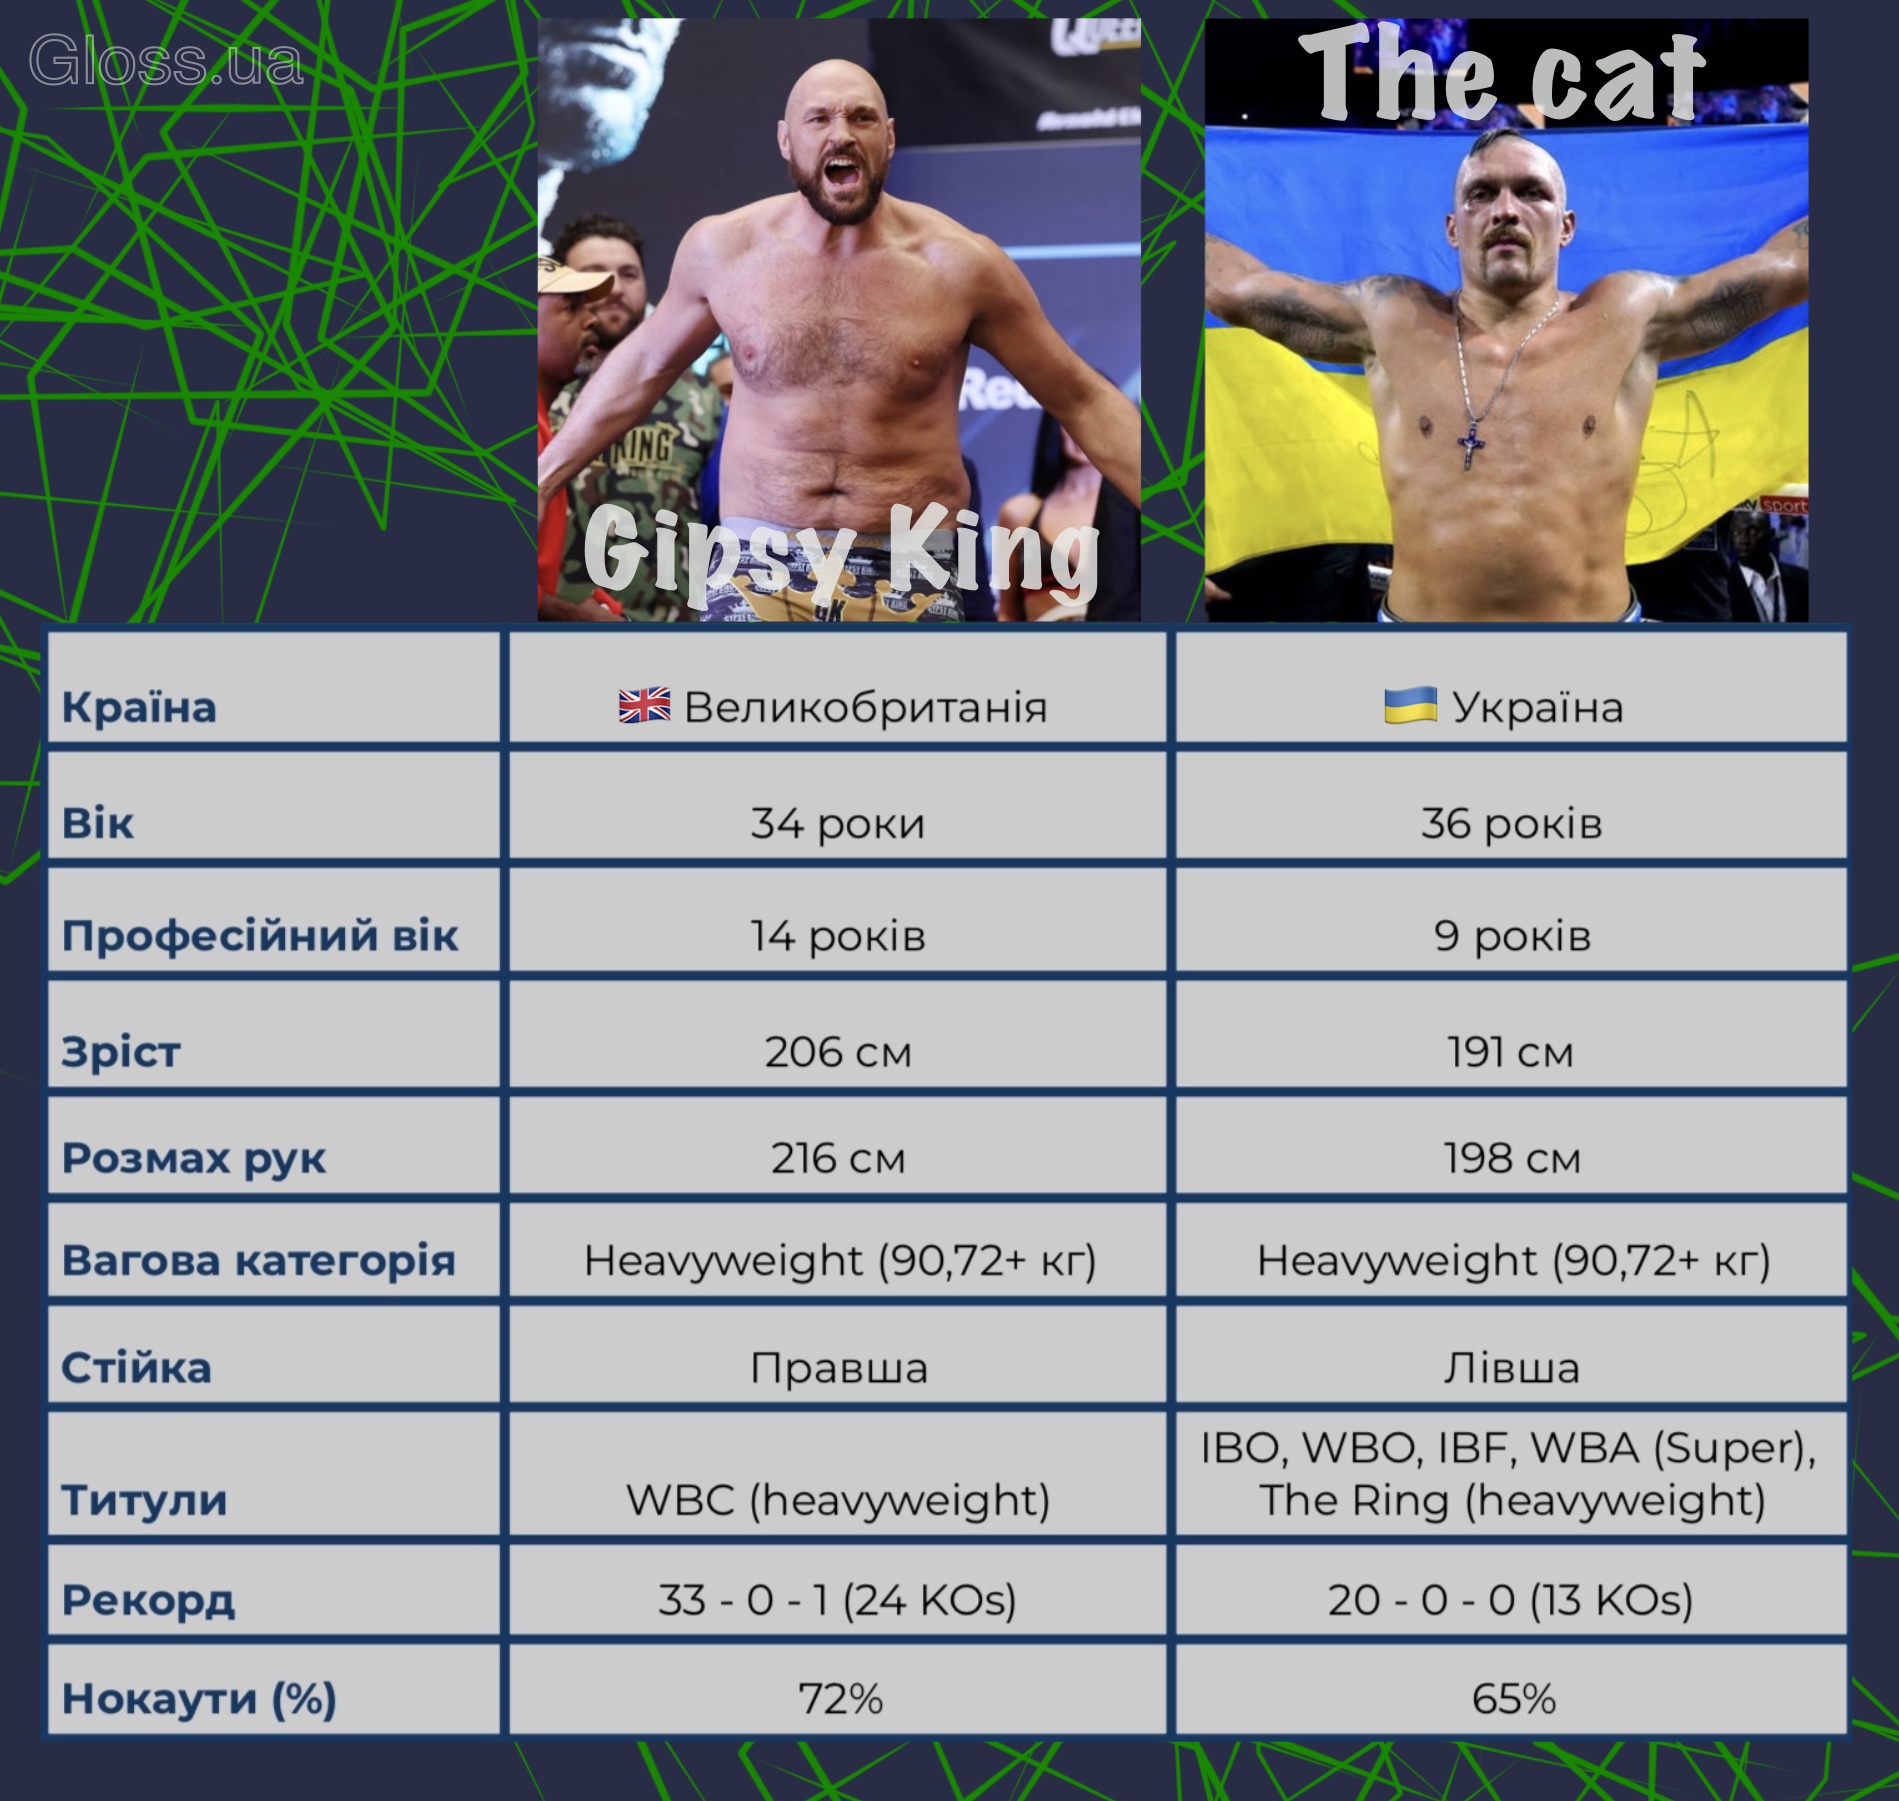 Бій за звання абсолютного чемпіона світу - Усик vs Ф'юрі: дата поєдинку, параметри боксерів, ставки букмекерів  фото 1